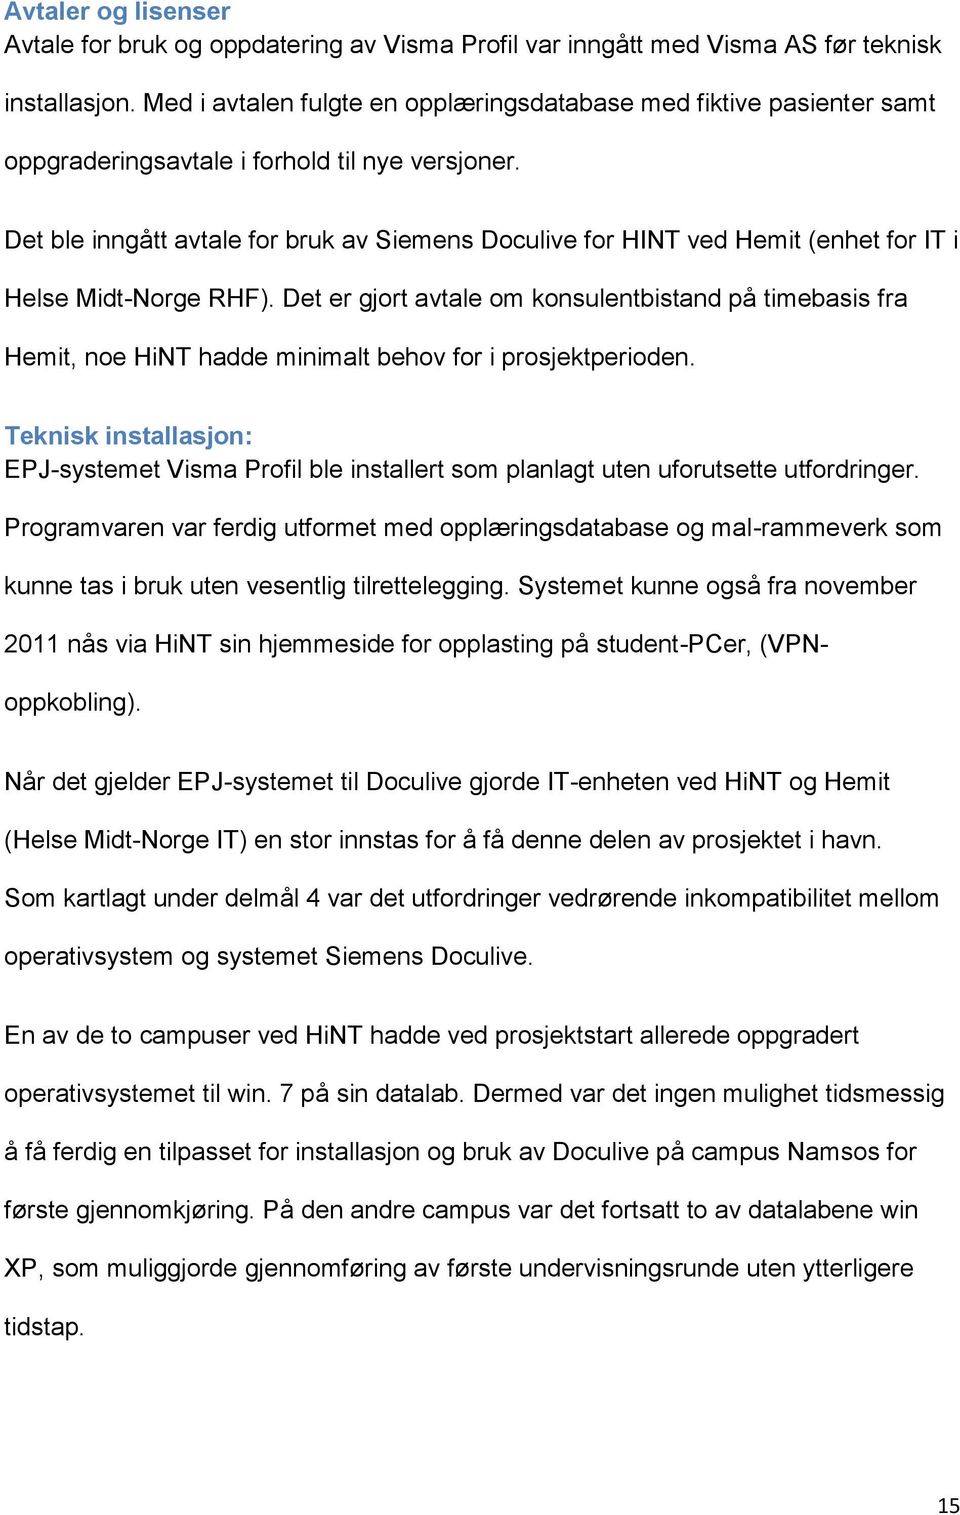 Det ble inngått avtale for bruk av Siemens Doculive for HINT ved Hemit (enhet for IT i Helse Midt-Norge RHF).